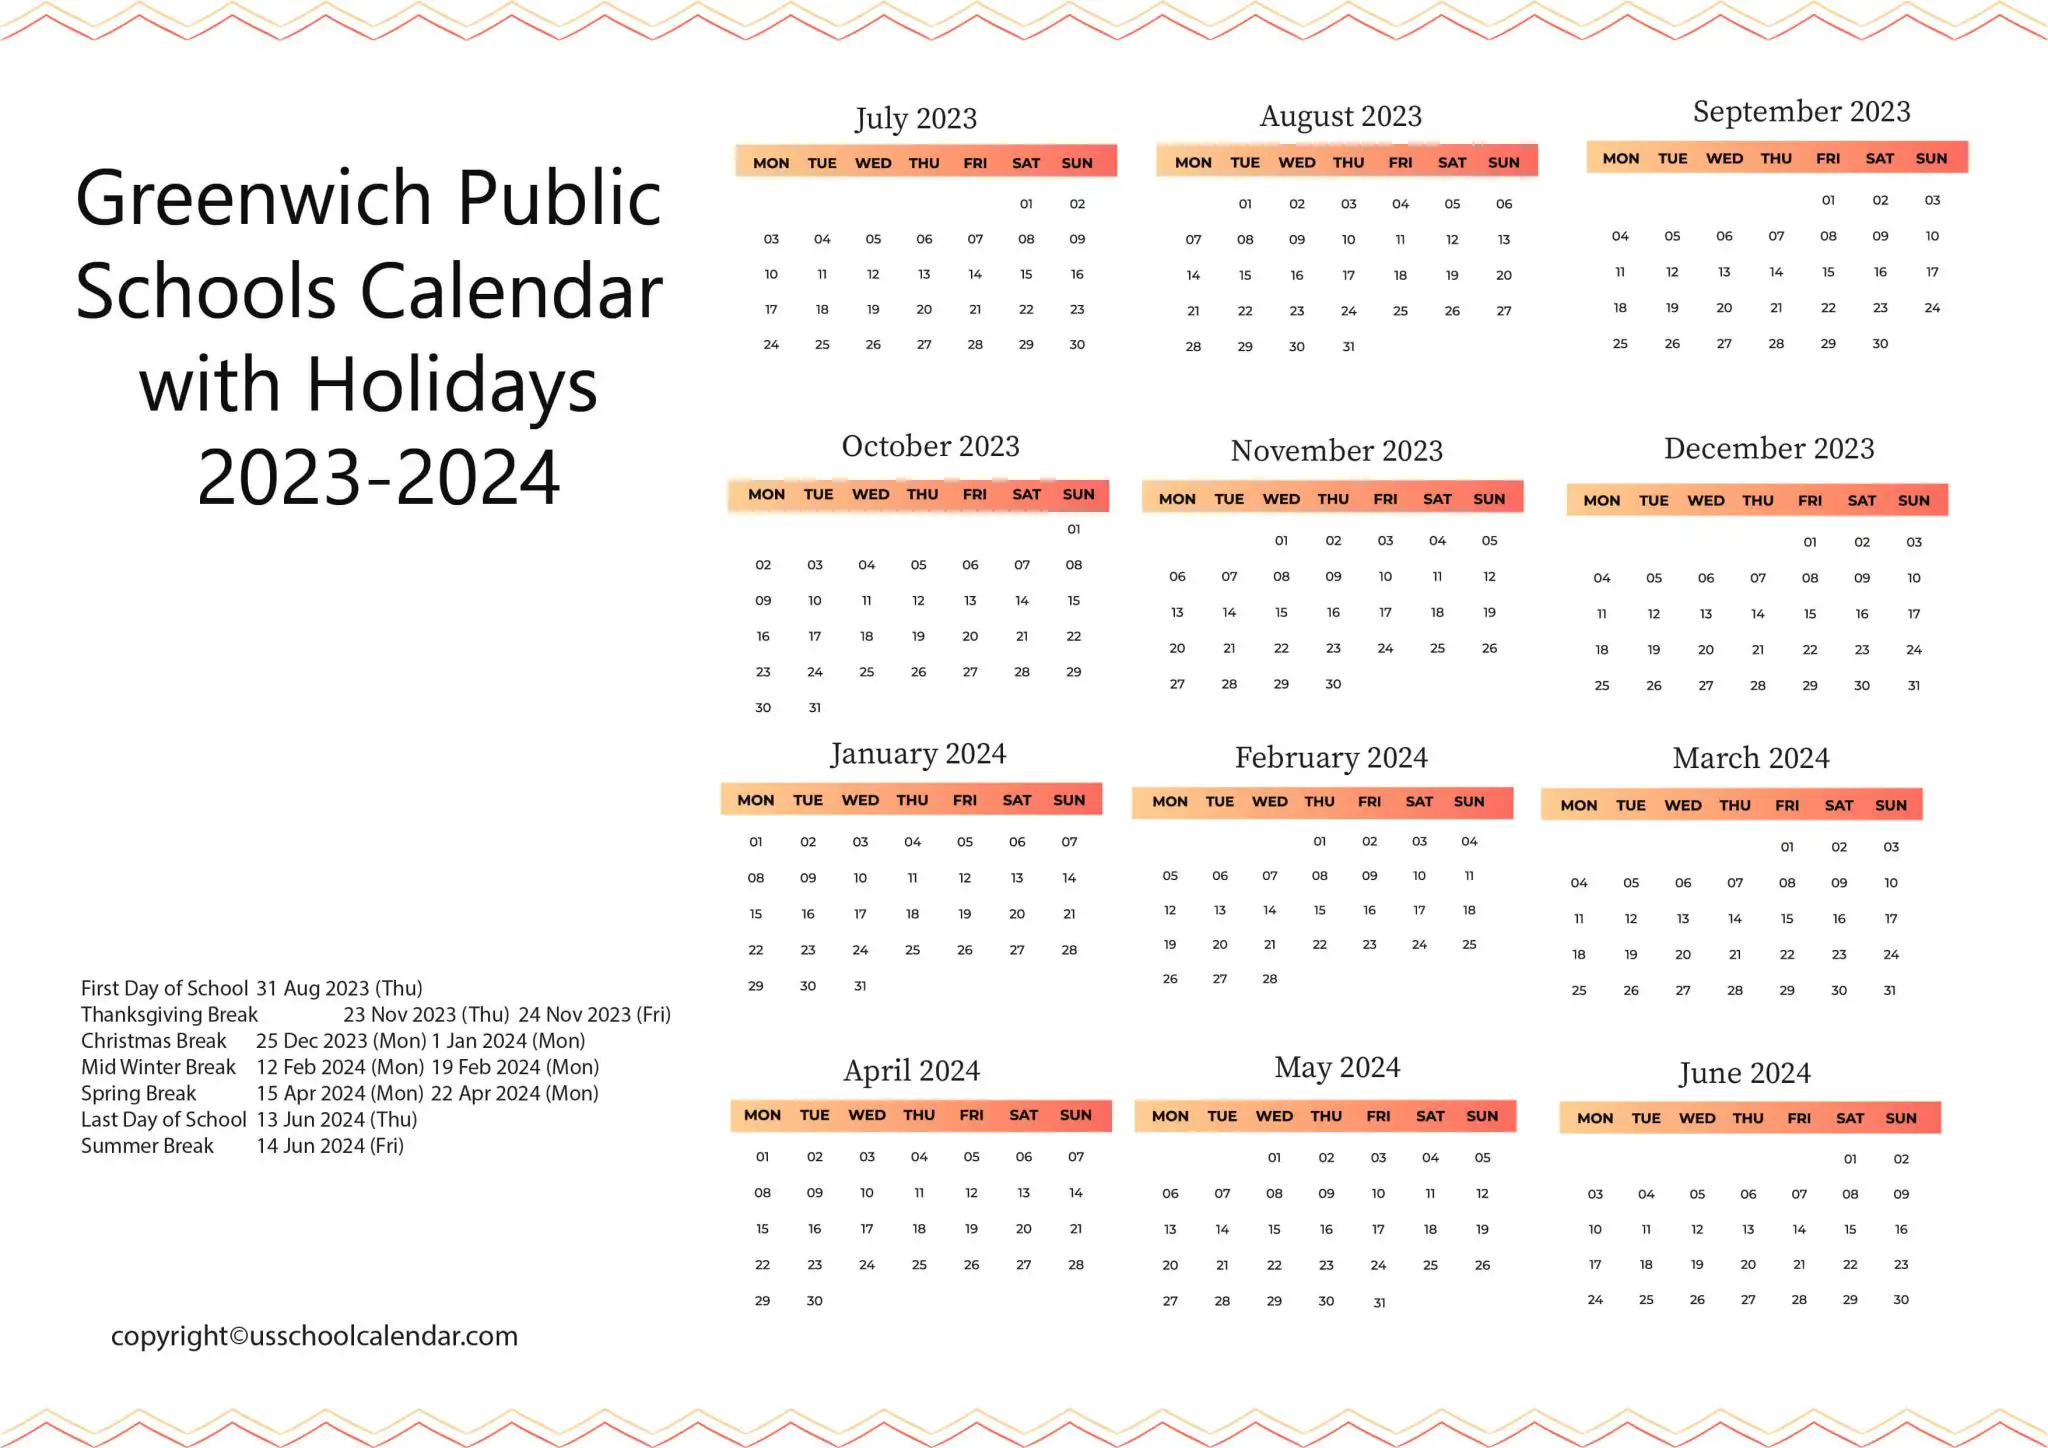 greenwich-public-schools-calendar-with-holidays-2023-2024